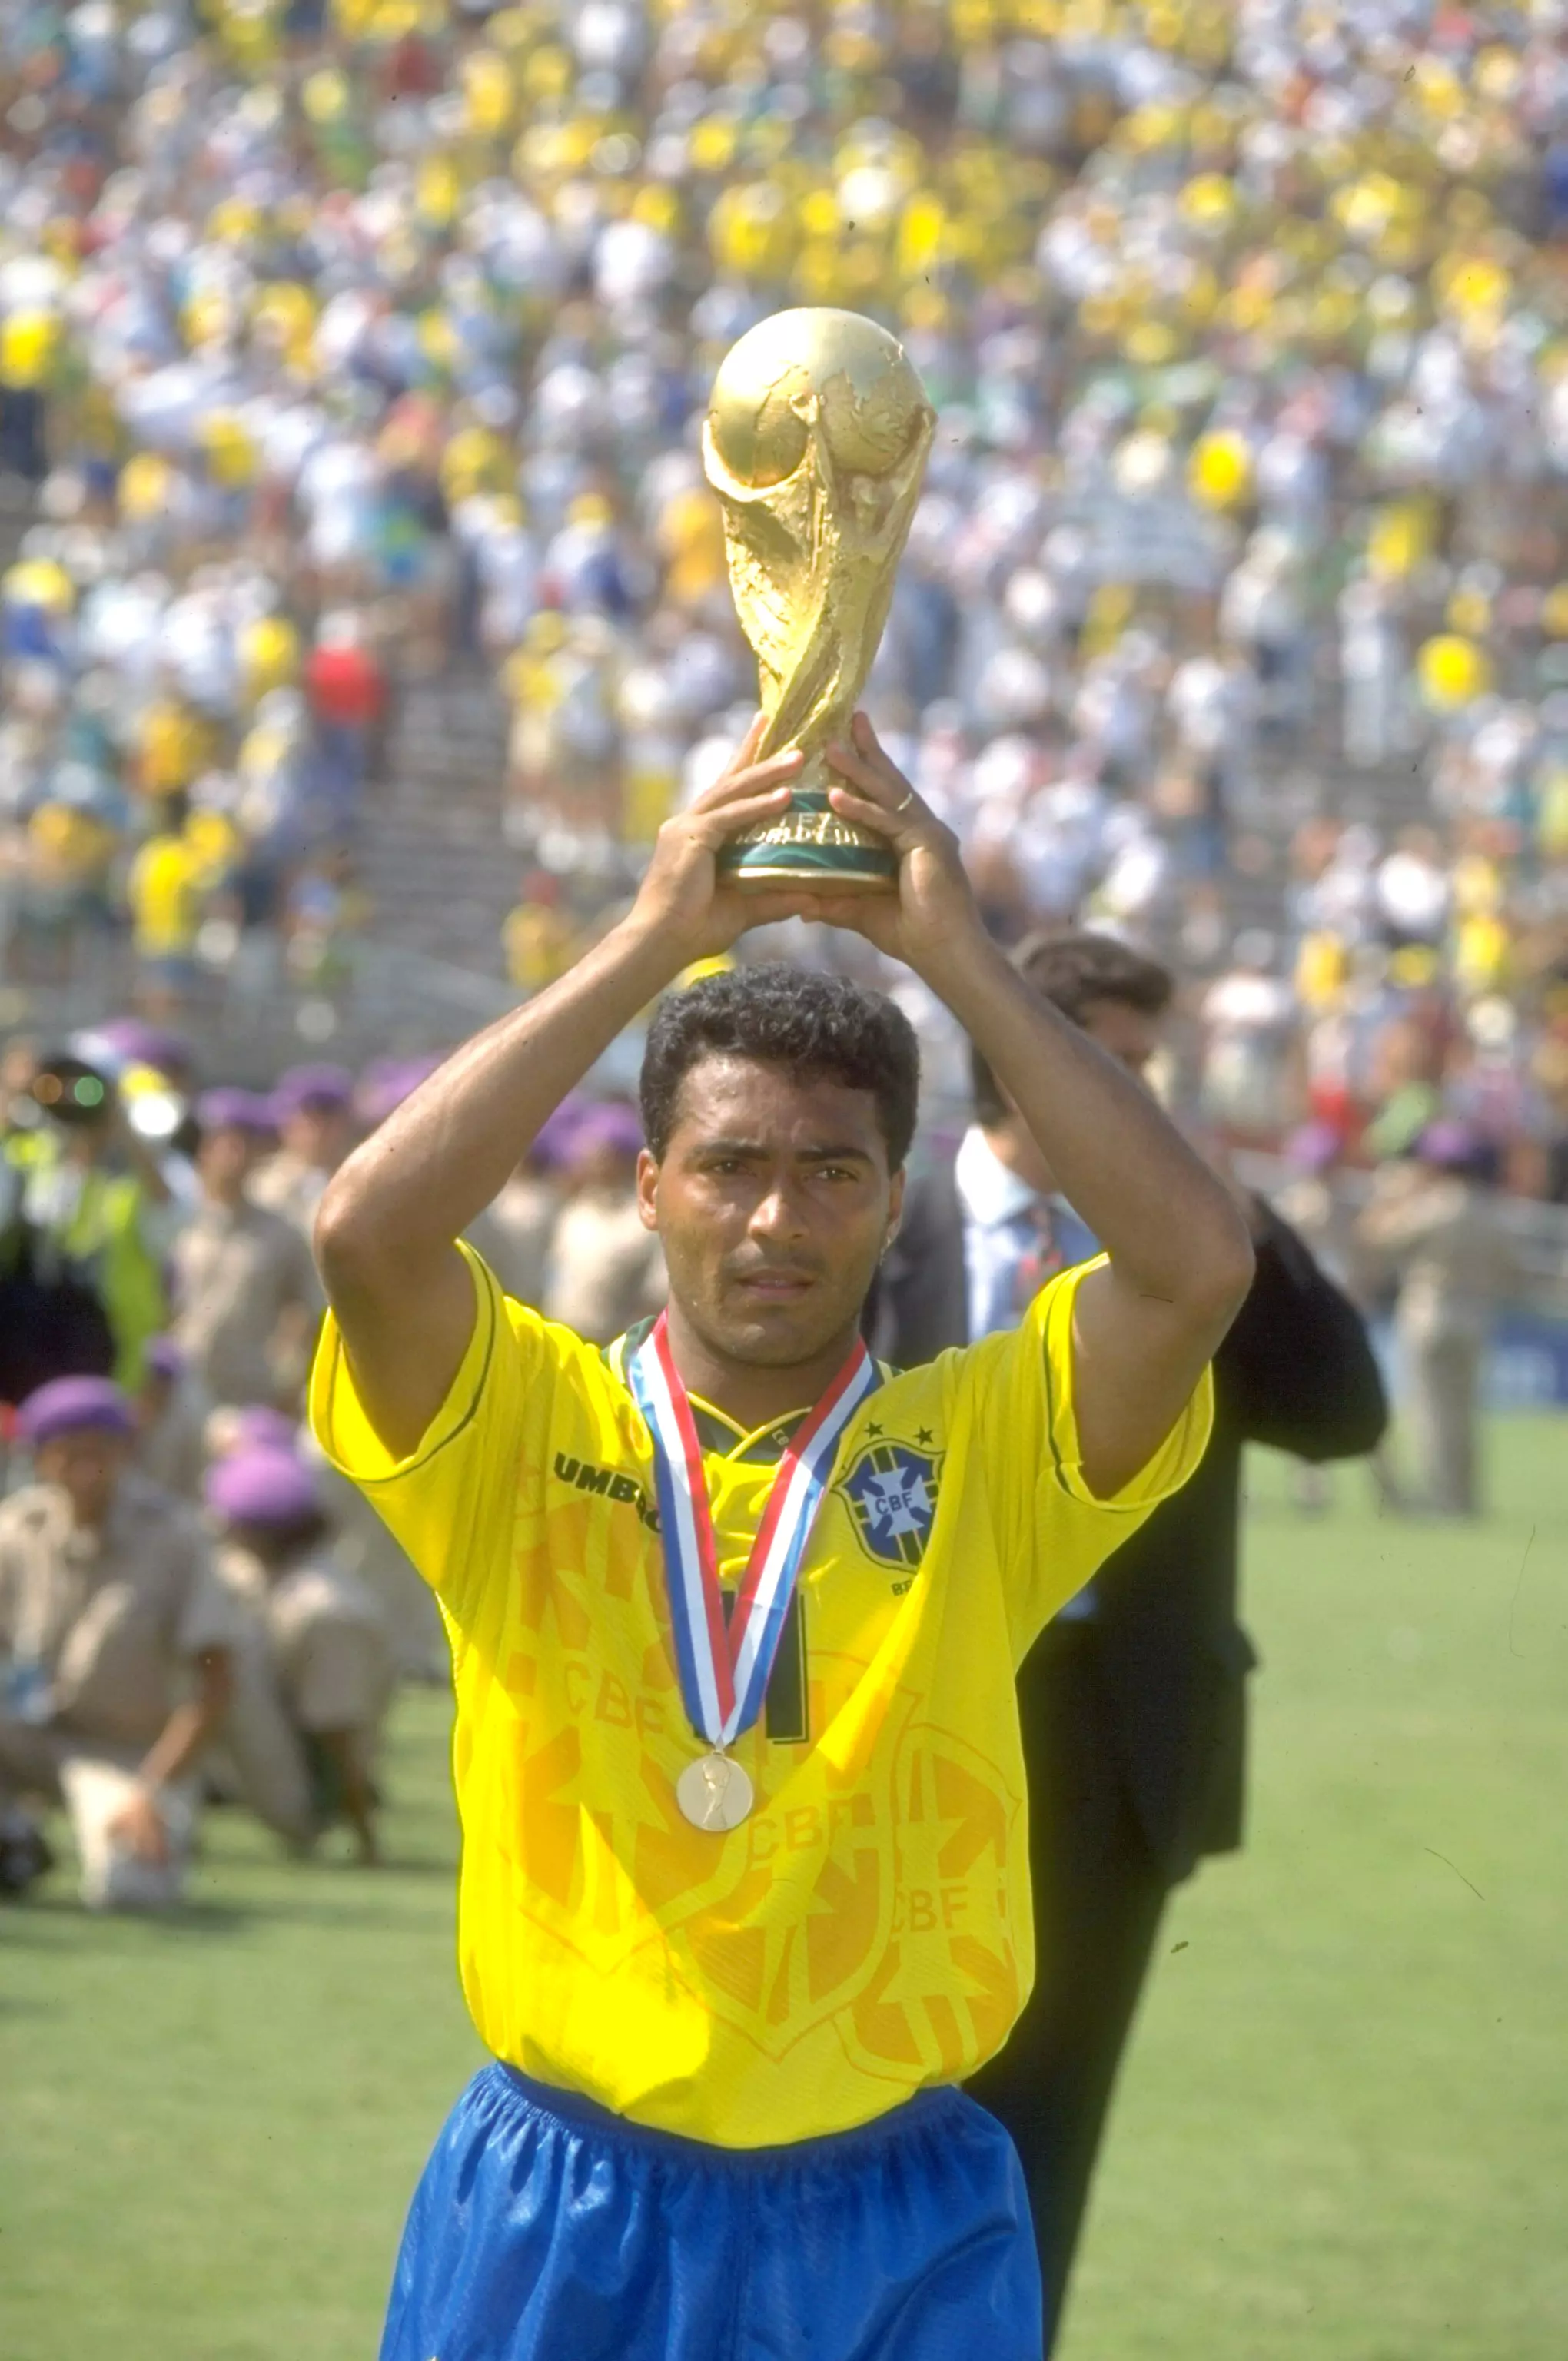 הופעה קסומה של ב-1994 הכניסה אותו לרשימה הסגורה של גיבורי גביע העולם. רומאריו